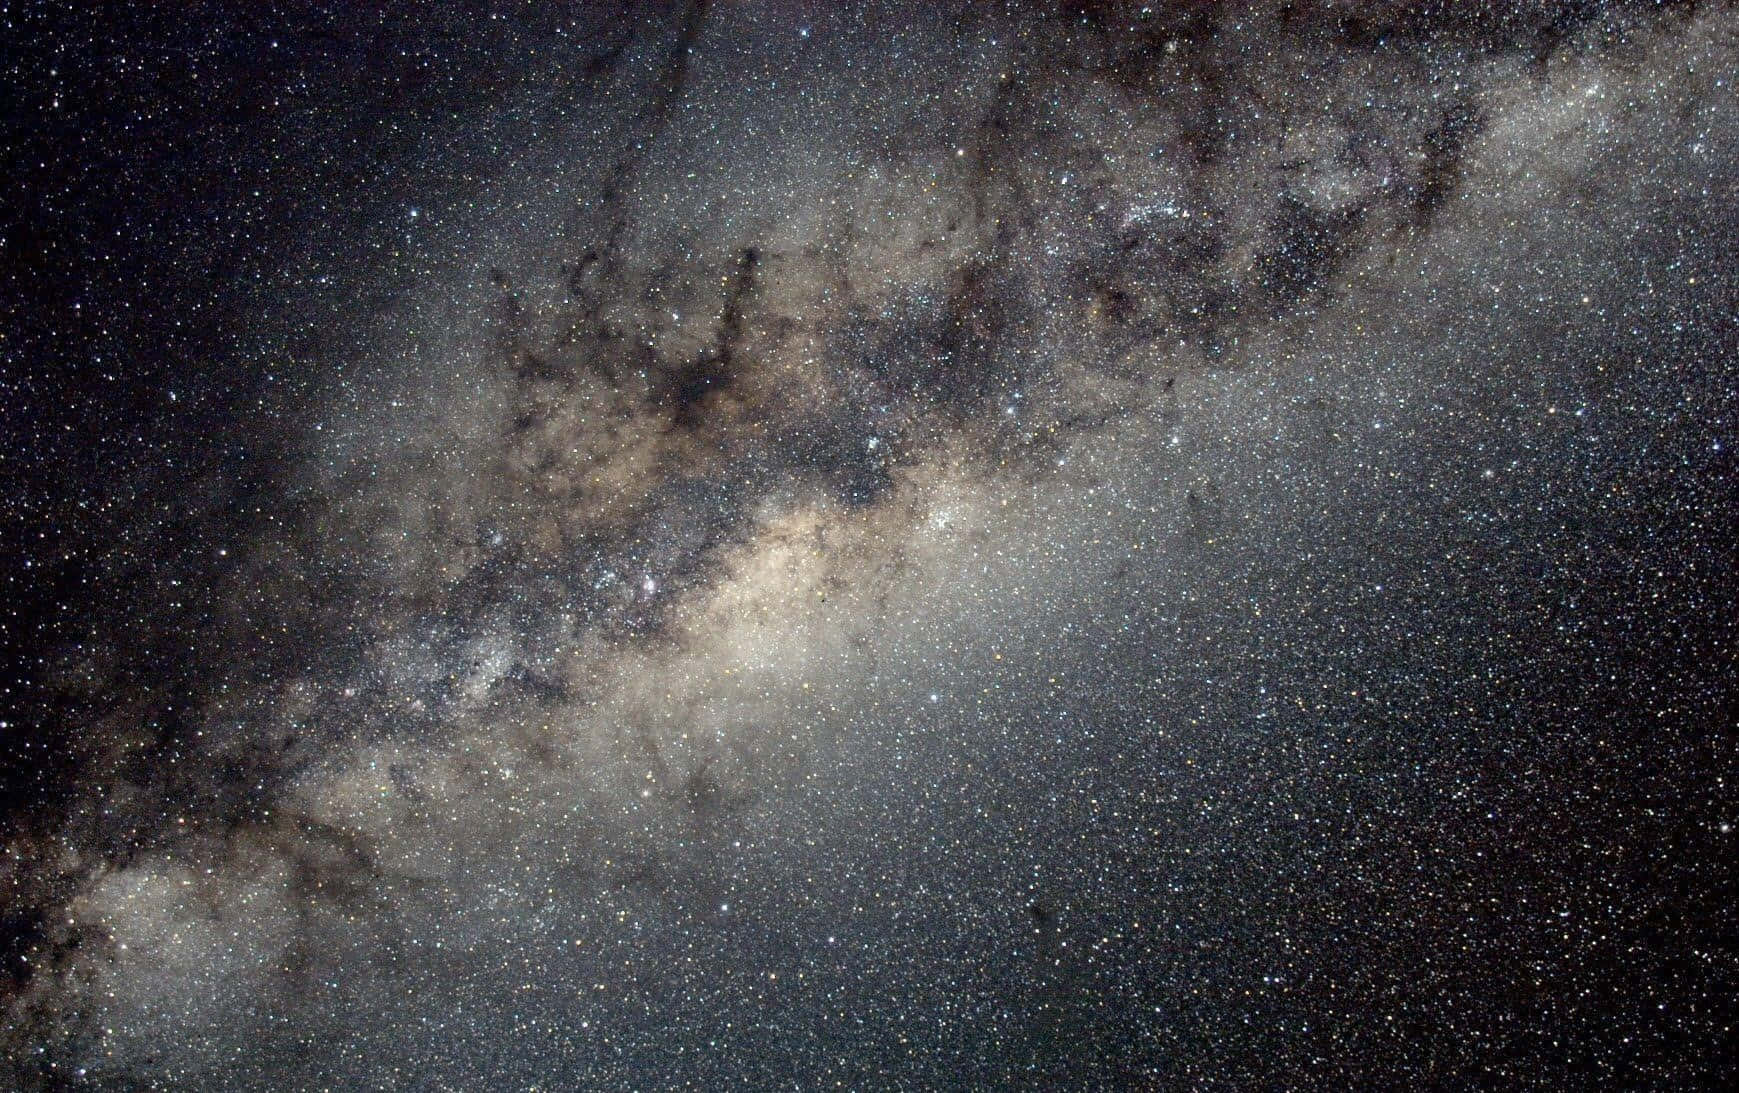 Splendid Galactic Vue - The Milky Way Galaxy